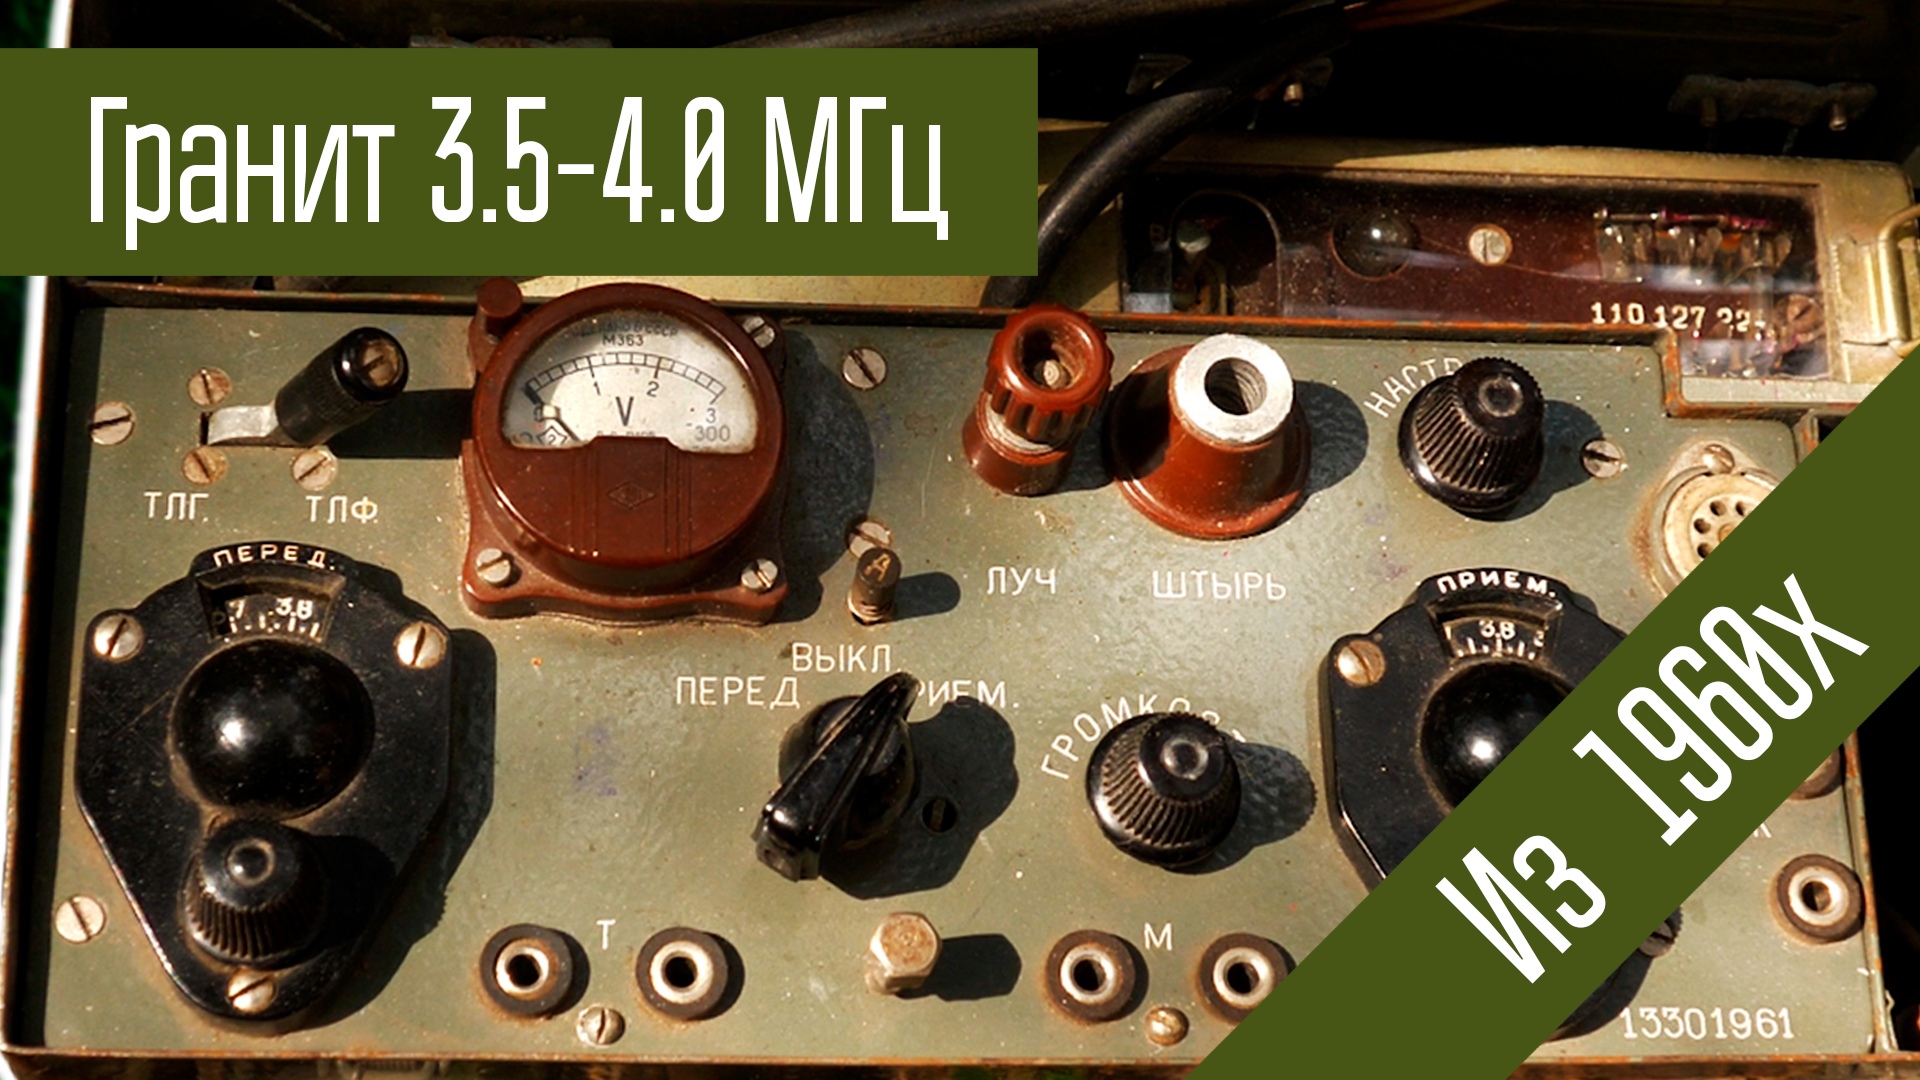 КВ Радиостанция Гранит 3.5-4 МГц, АМ 0.4 Вт Ламповая. Сделано в СССР в 1960х.